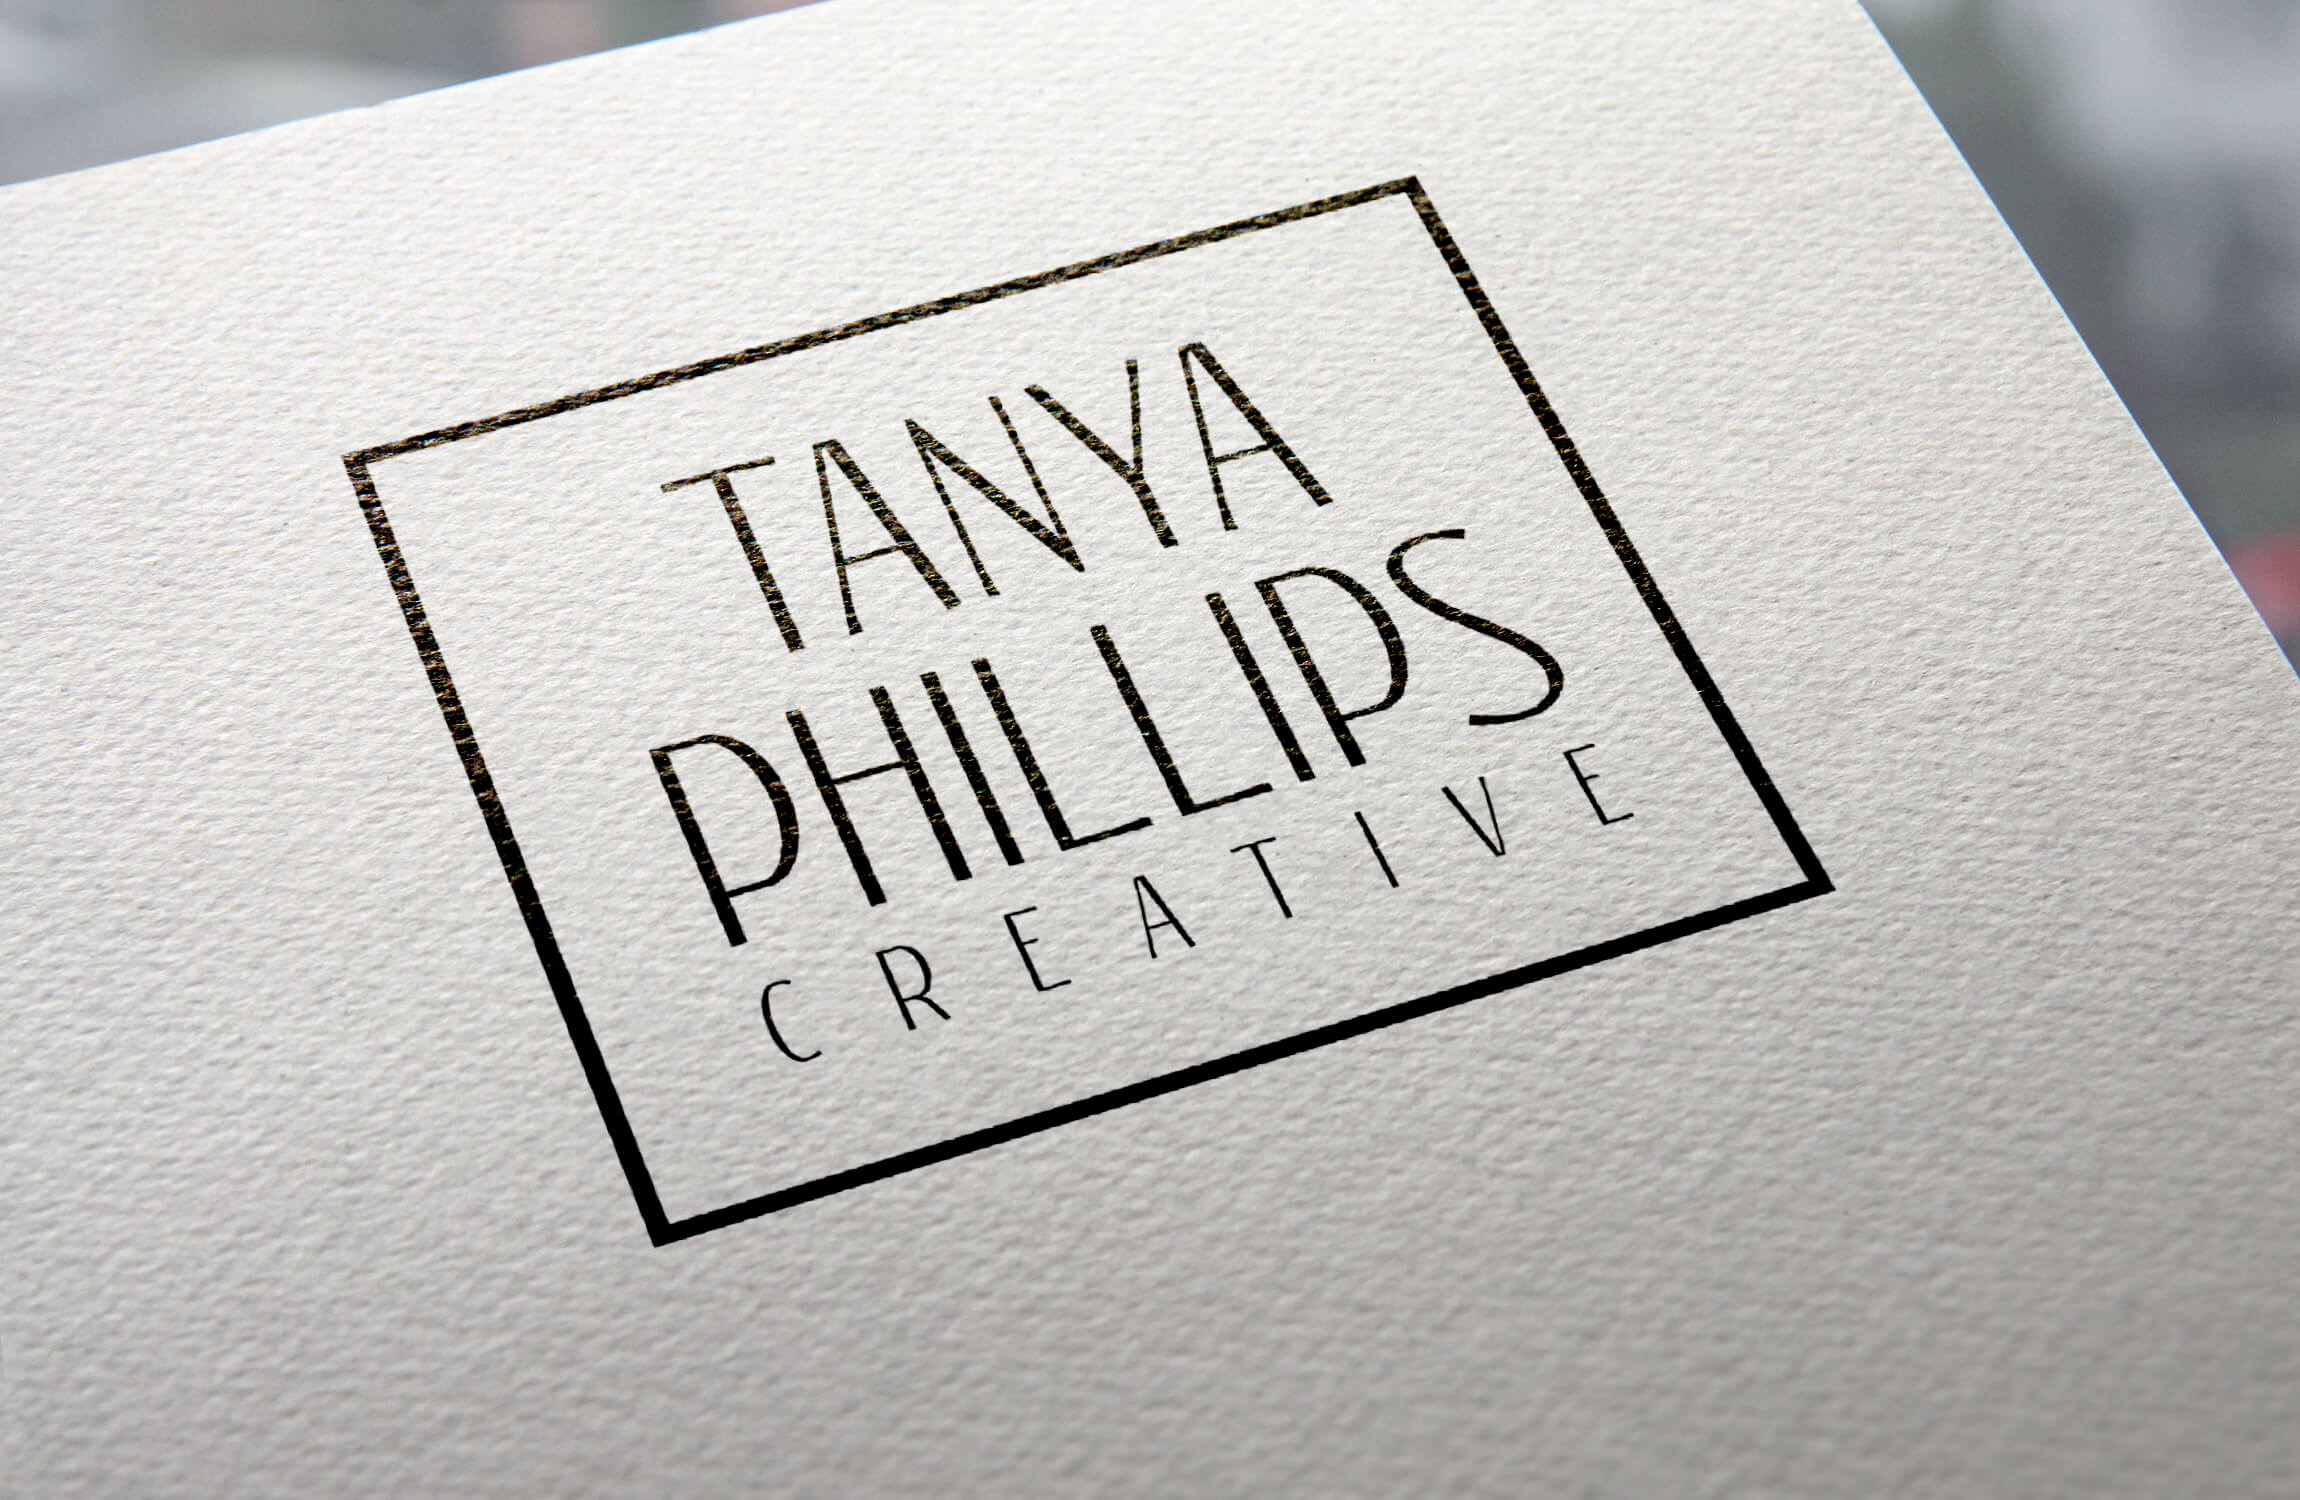 tanya-phillips-branding-logo-web-design-wordpress-based-service-for-videographer-small-business-freelance-designer-bexley-kogarah